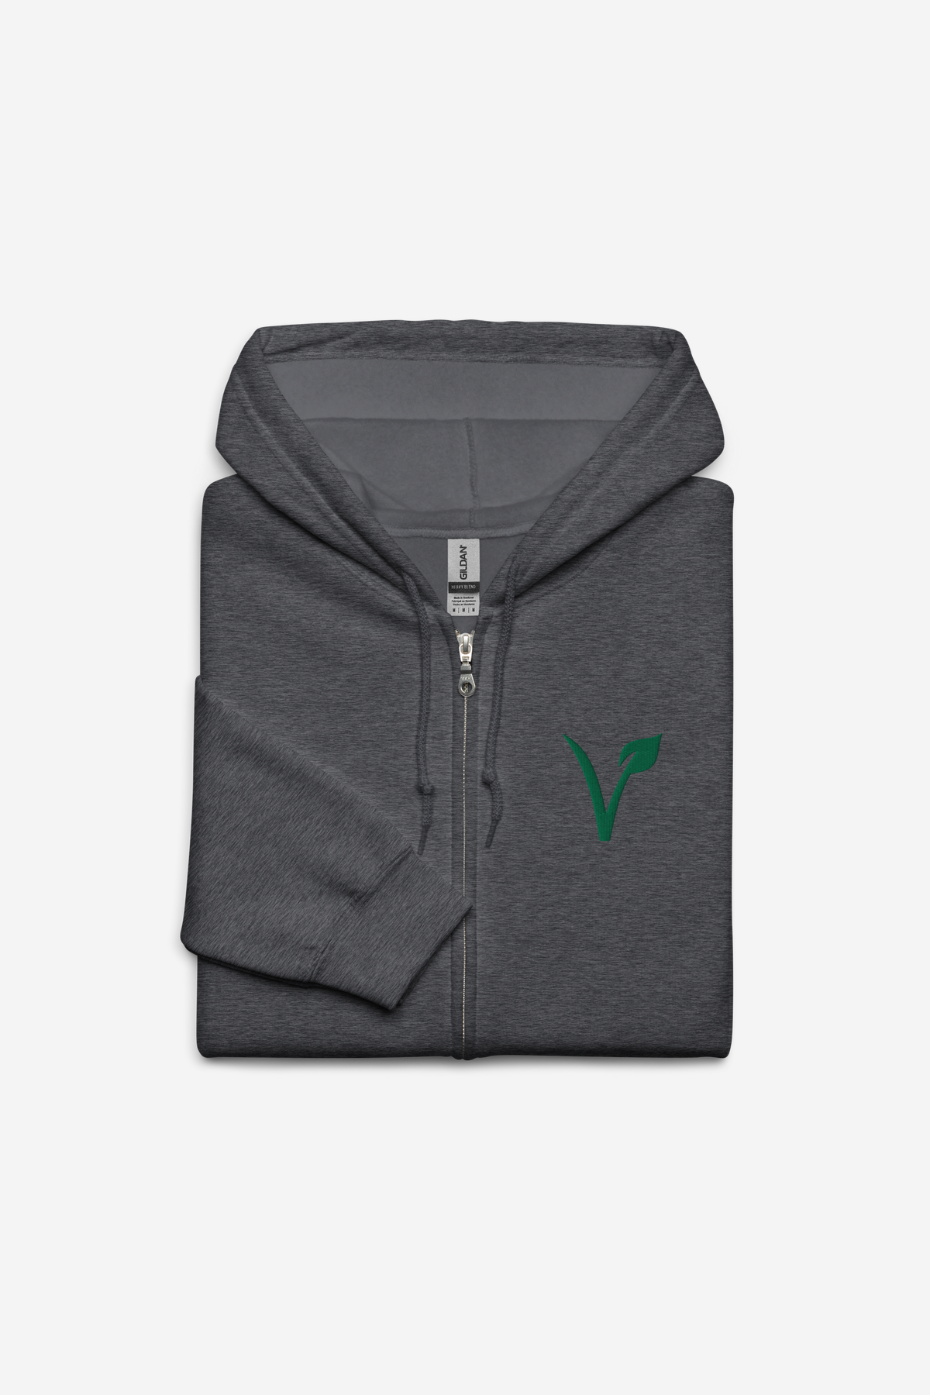 V Leaf Unisex zip hoodie - Embroidery